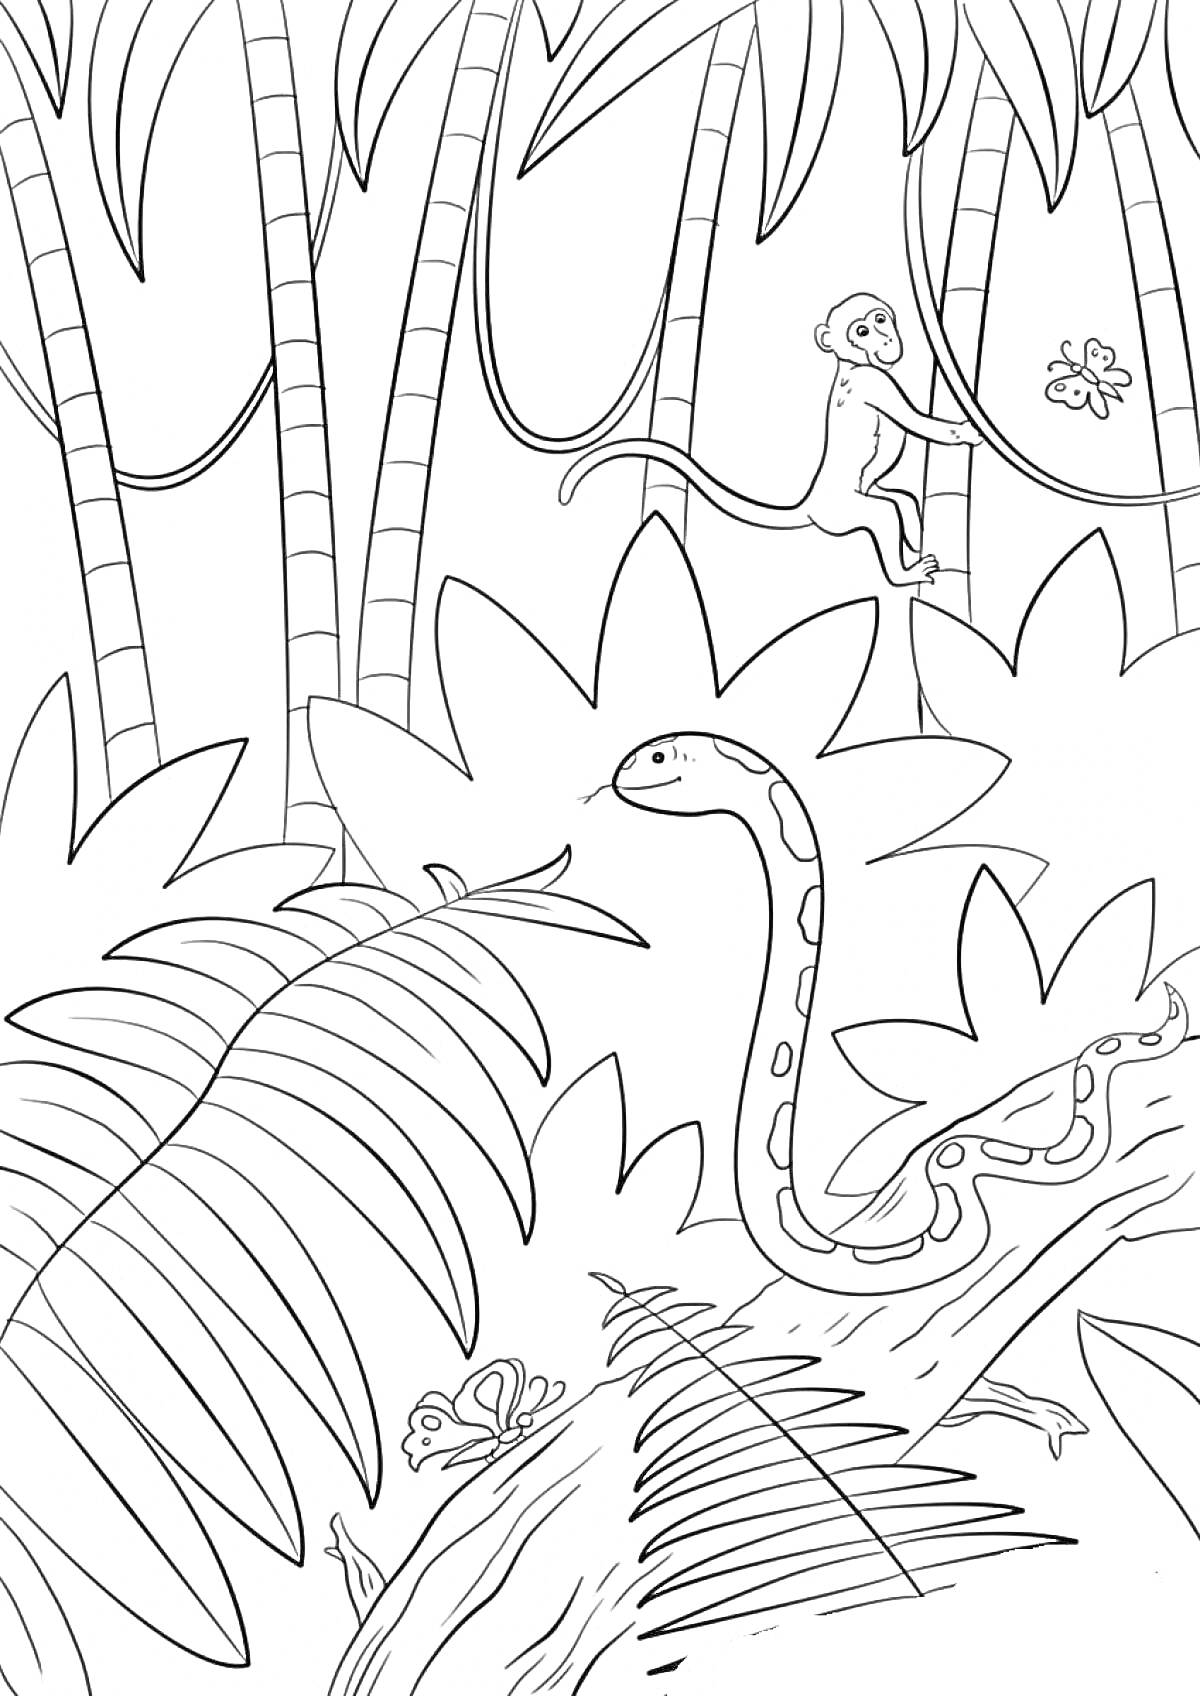 Раскраска Джунгли с обезьяной, змеёй, лягушкой и деревьями